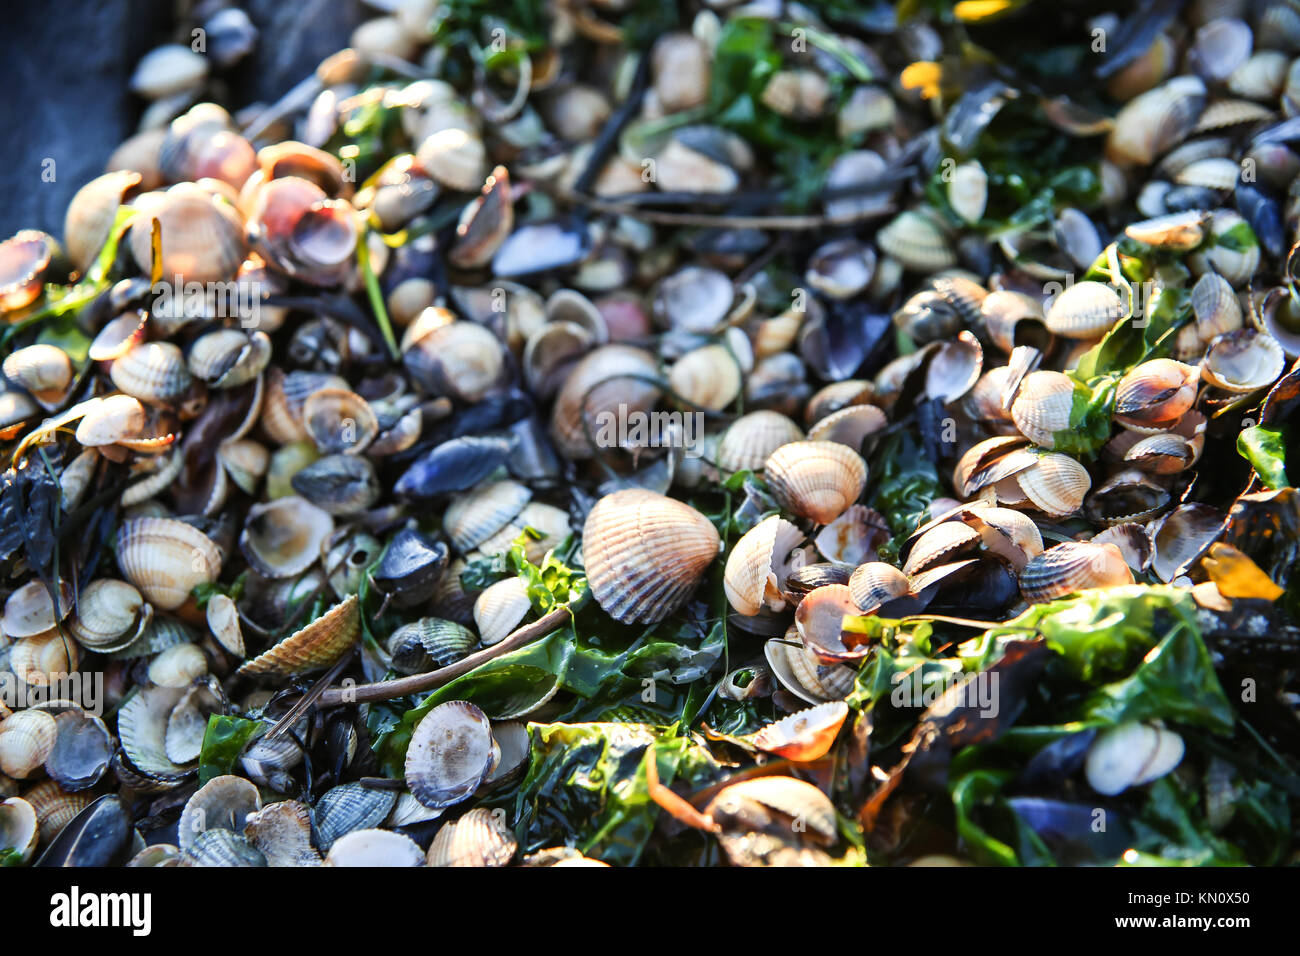 shellfish 1 Stock Photo